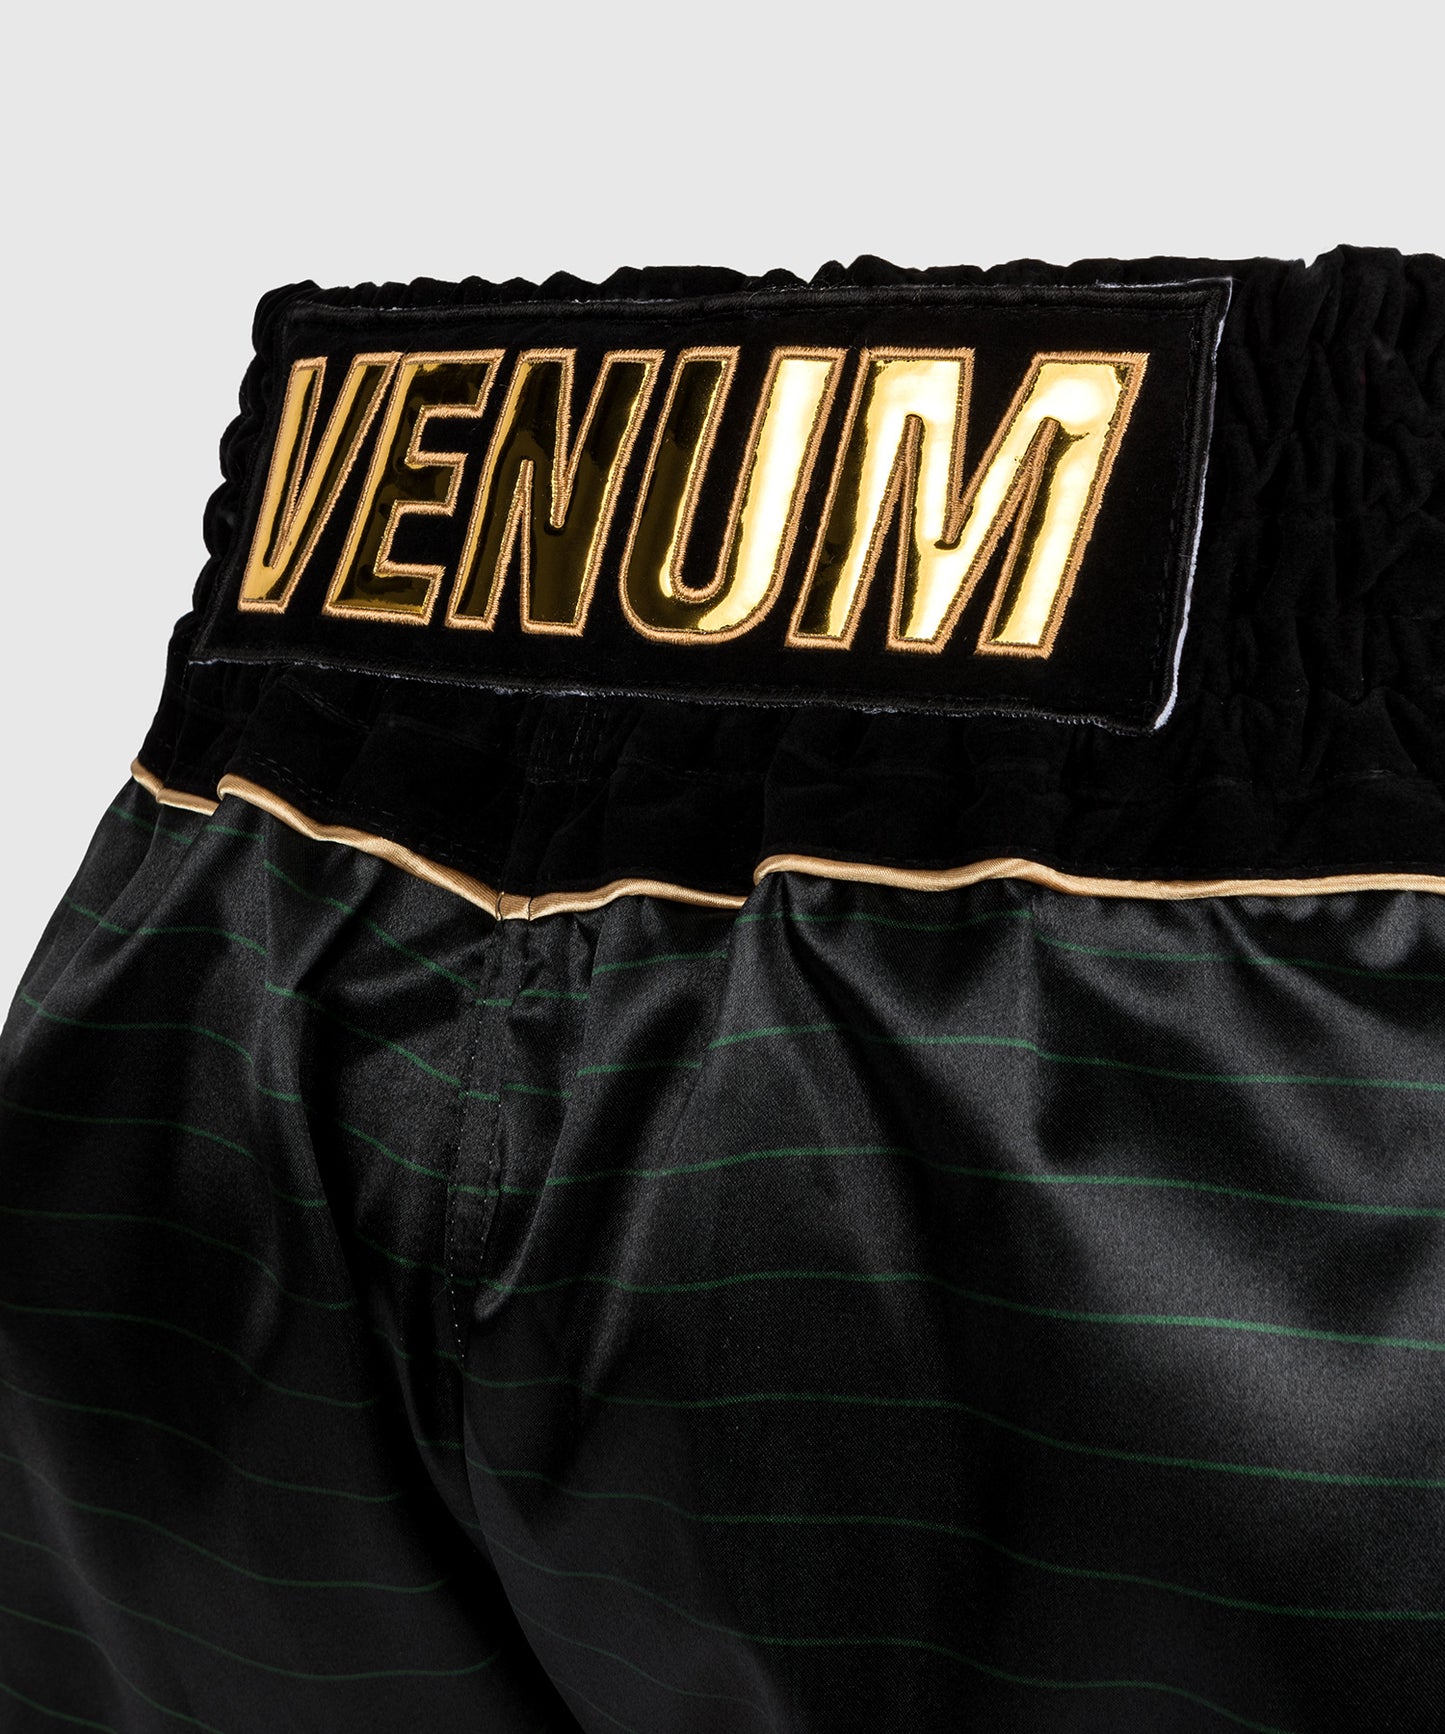 Venum Attack Shorts de Muay Thai - Negro/Verde